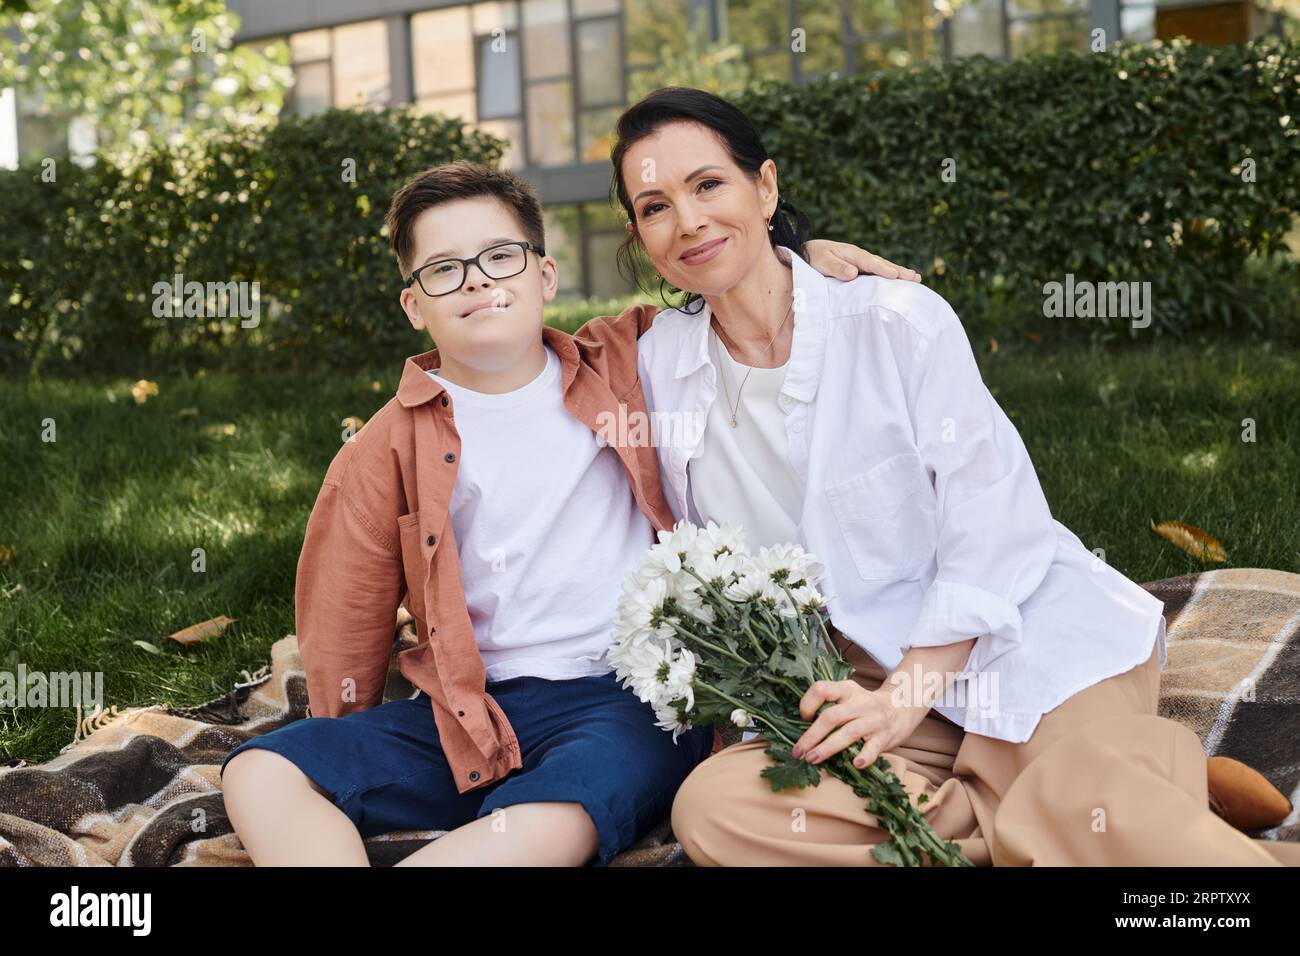 Frau mittleren Alters, die Blumen hält, während sie in der Nähe des Sohnes sitzt, mit Down-Syndrom auf einer Decke im Park Stockfoto